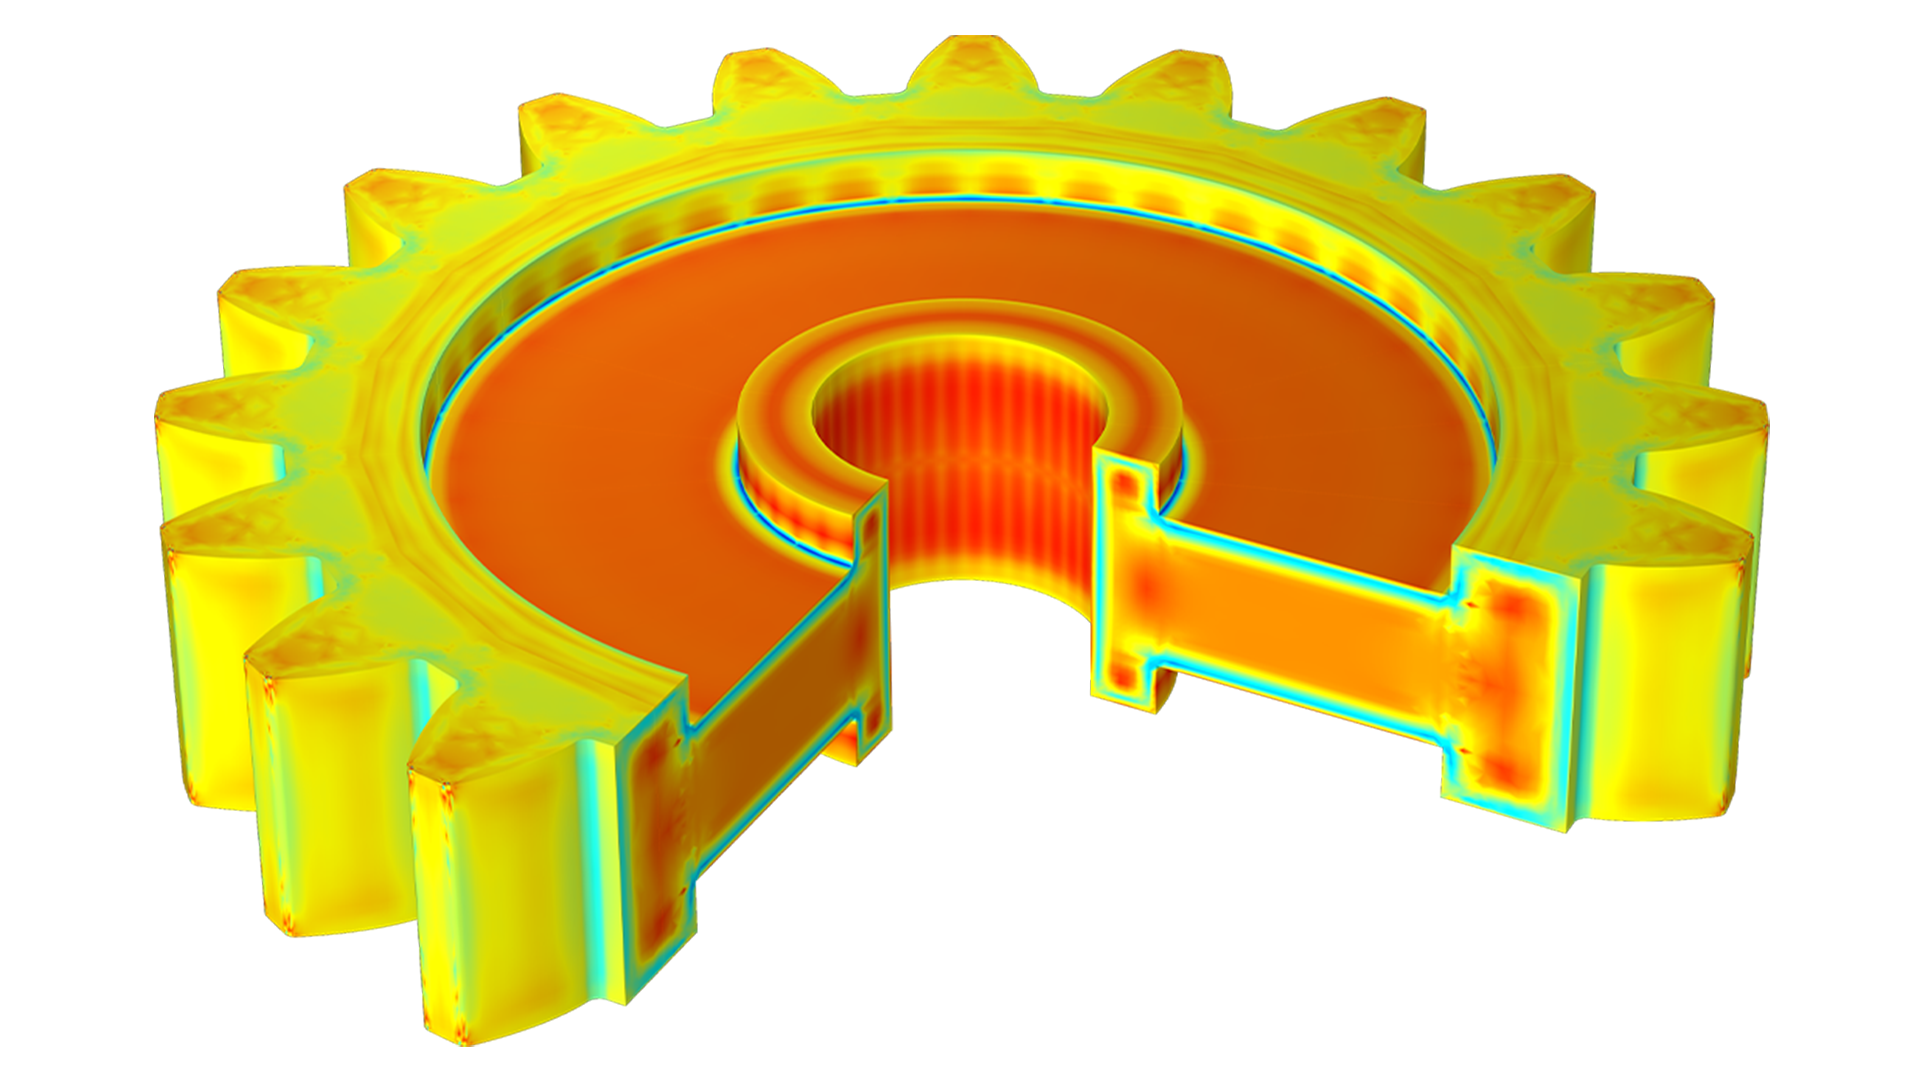 Ingranaggio cilindrico visualizzato in arancione, giallo e verde; manca una sezione, che rivela l'interno dell'ingranaggio.